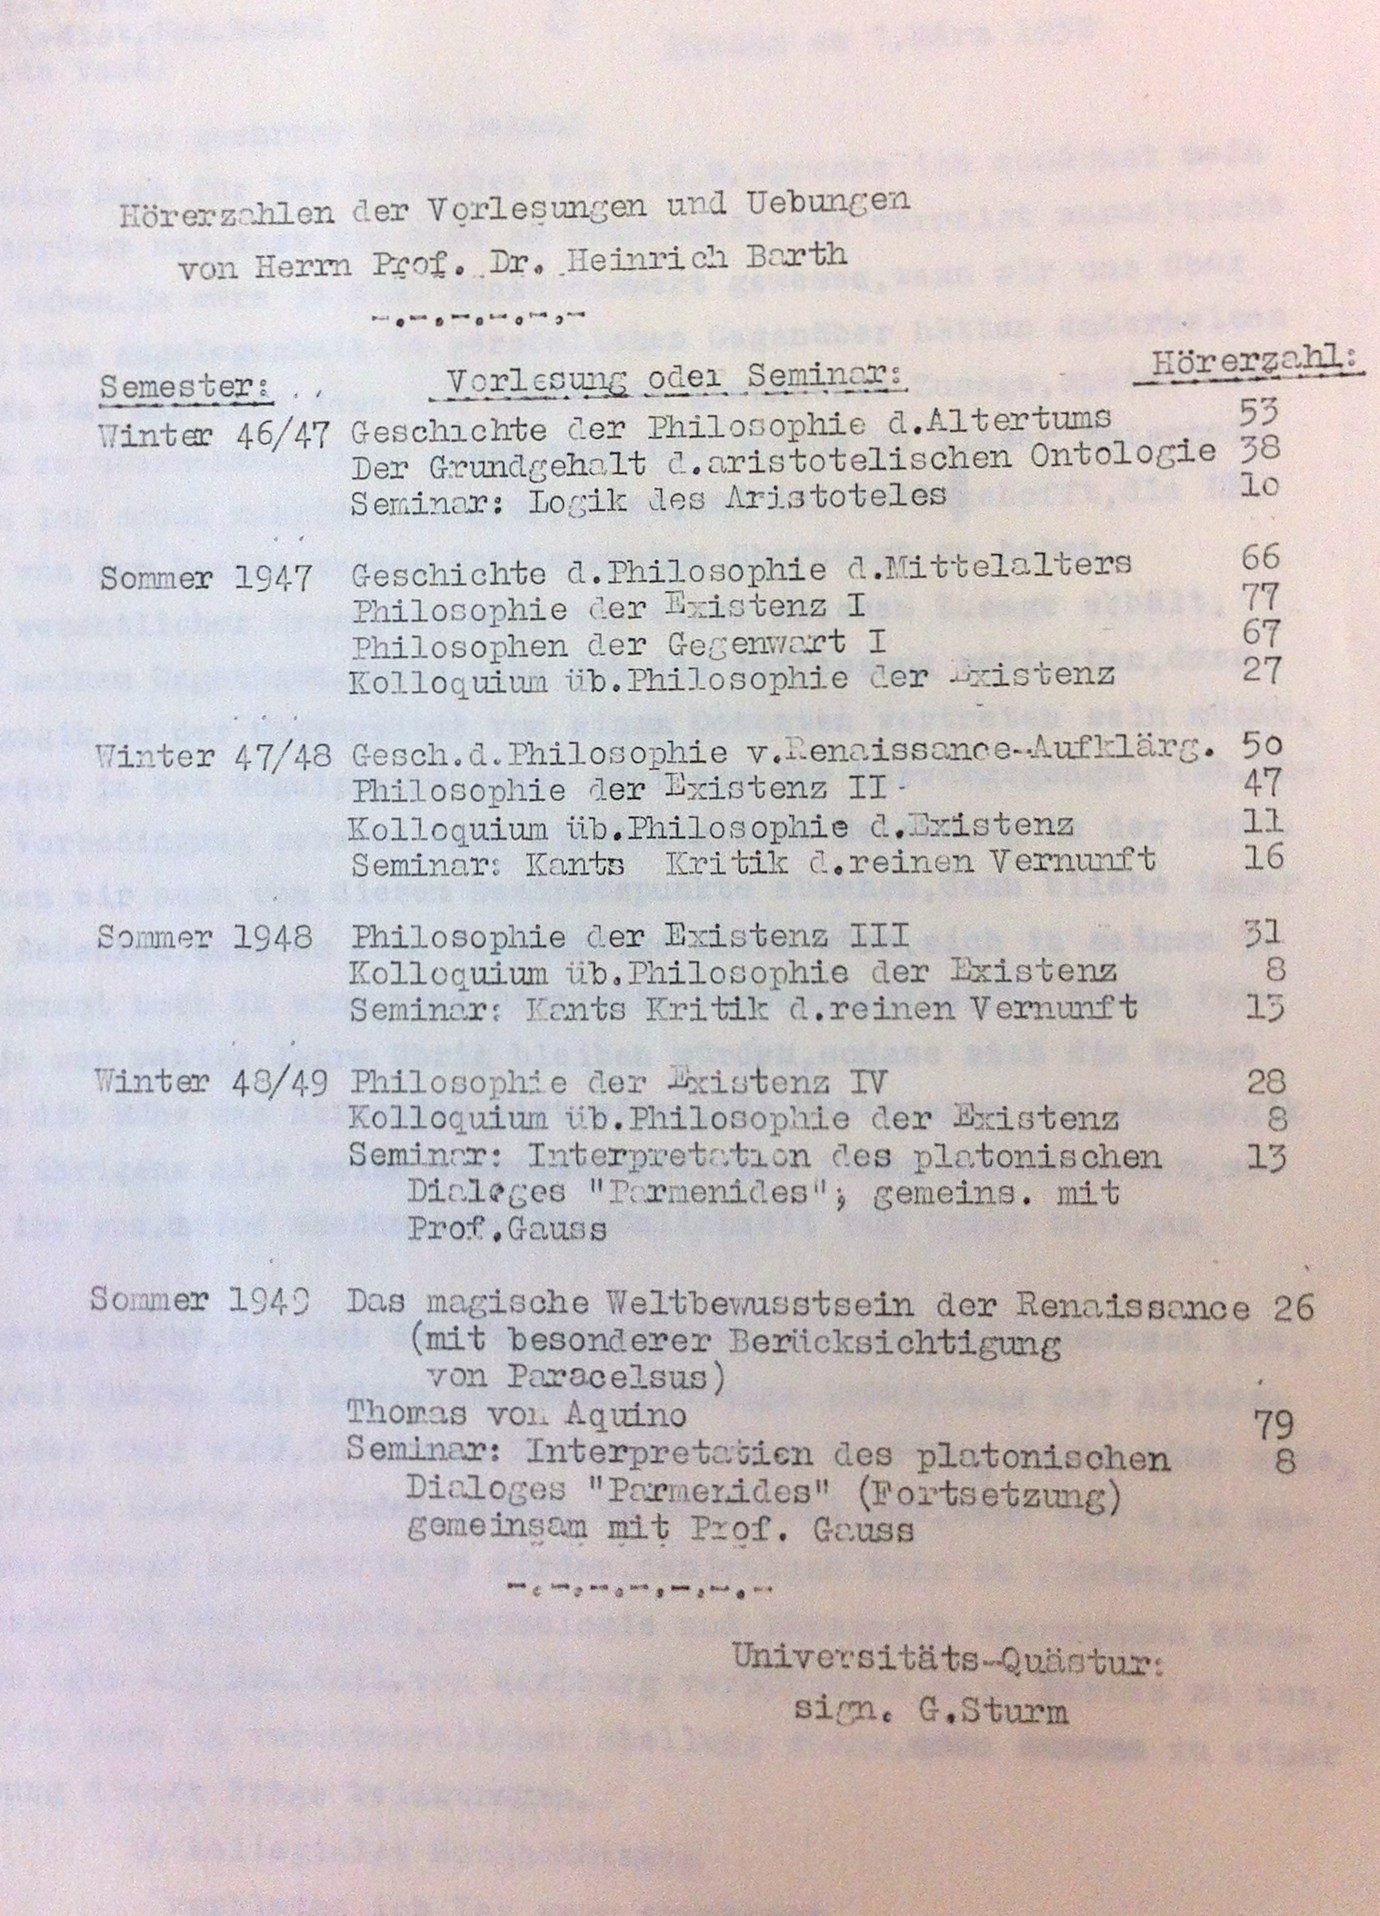 Veranstaltungen von Heinrich Barth 46–49